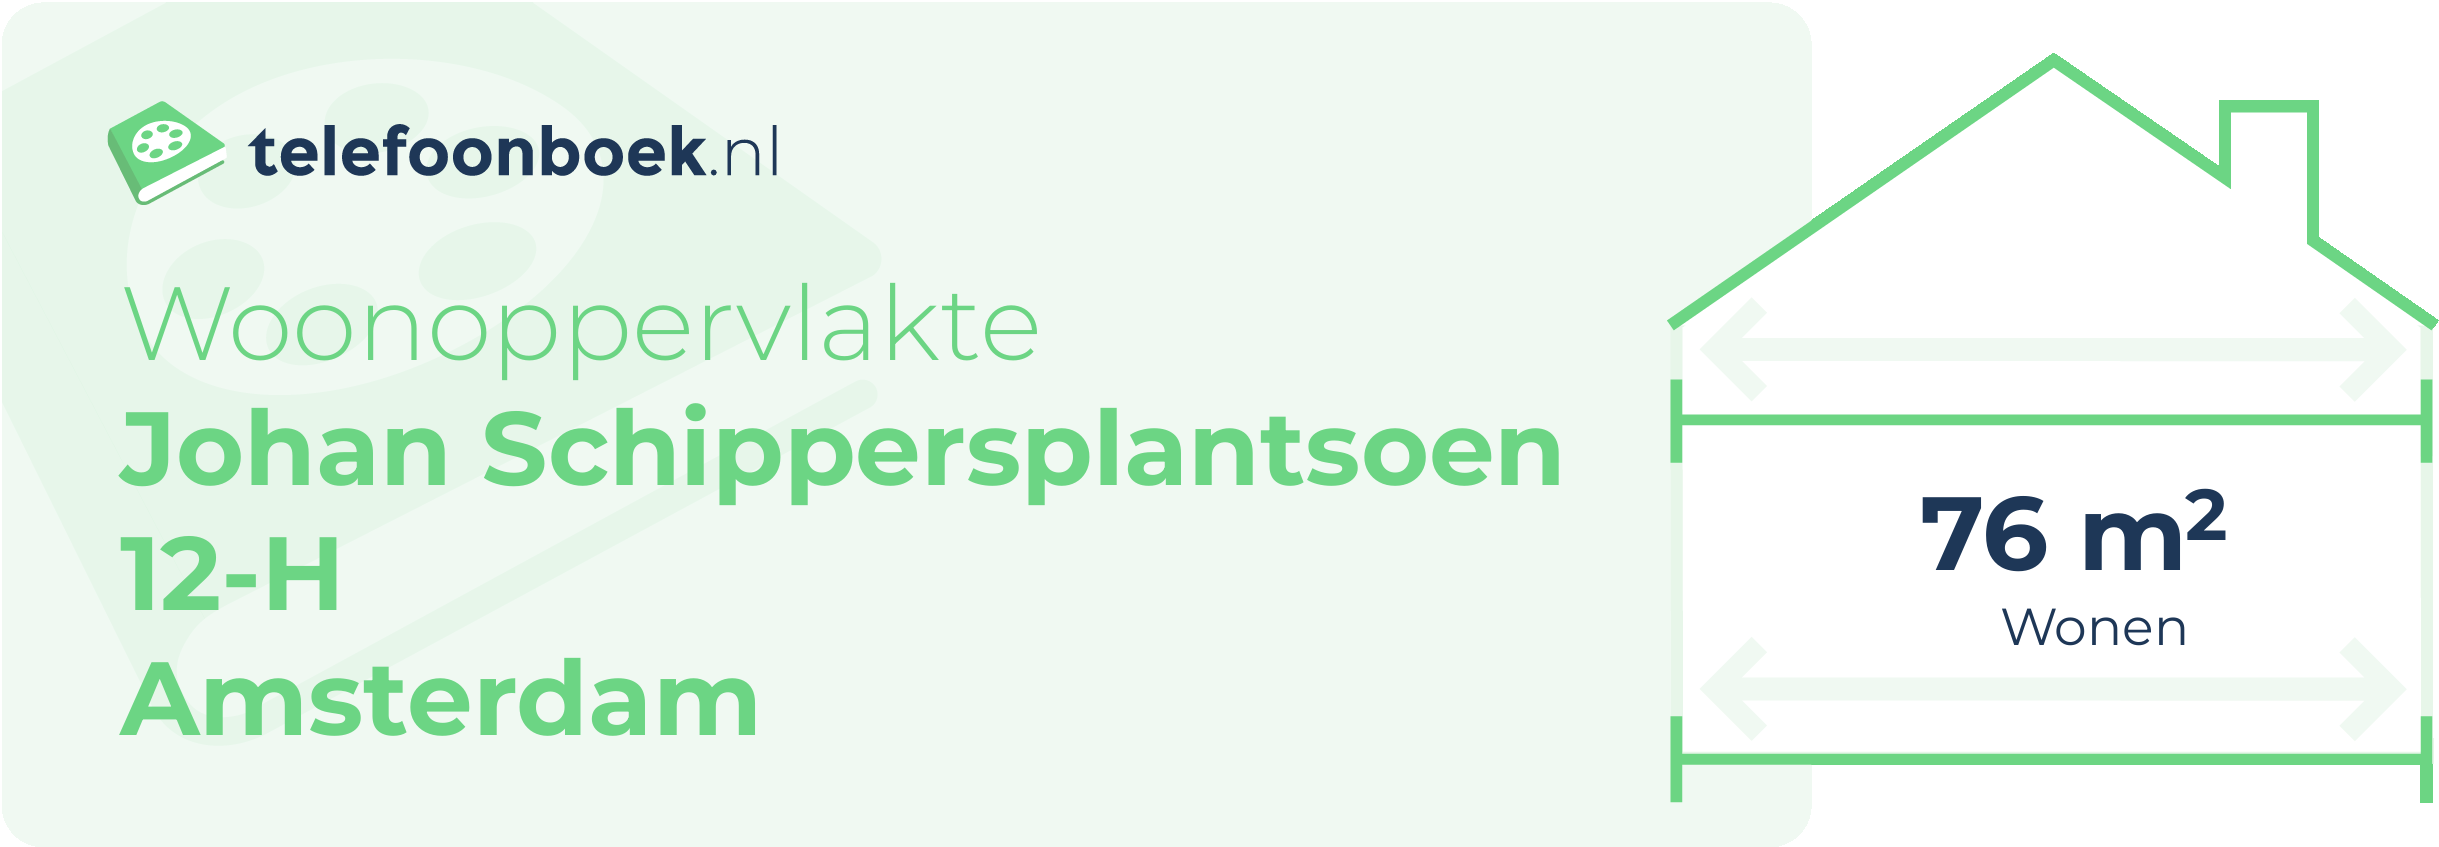 Woonoppervlakte Johan Schippersplantsoen 12-H Amsterdam